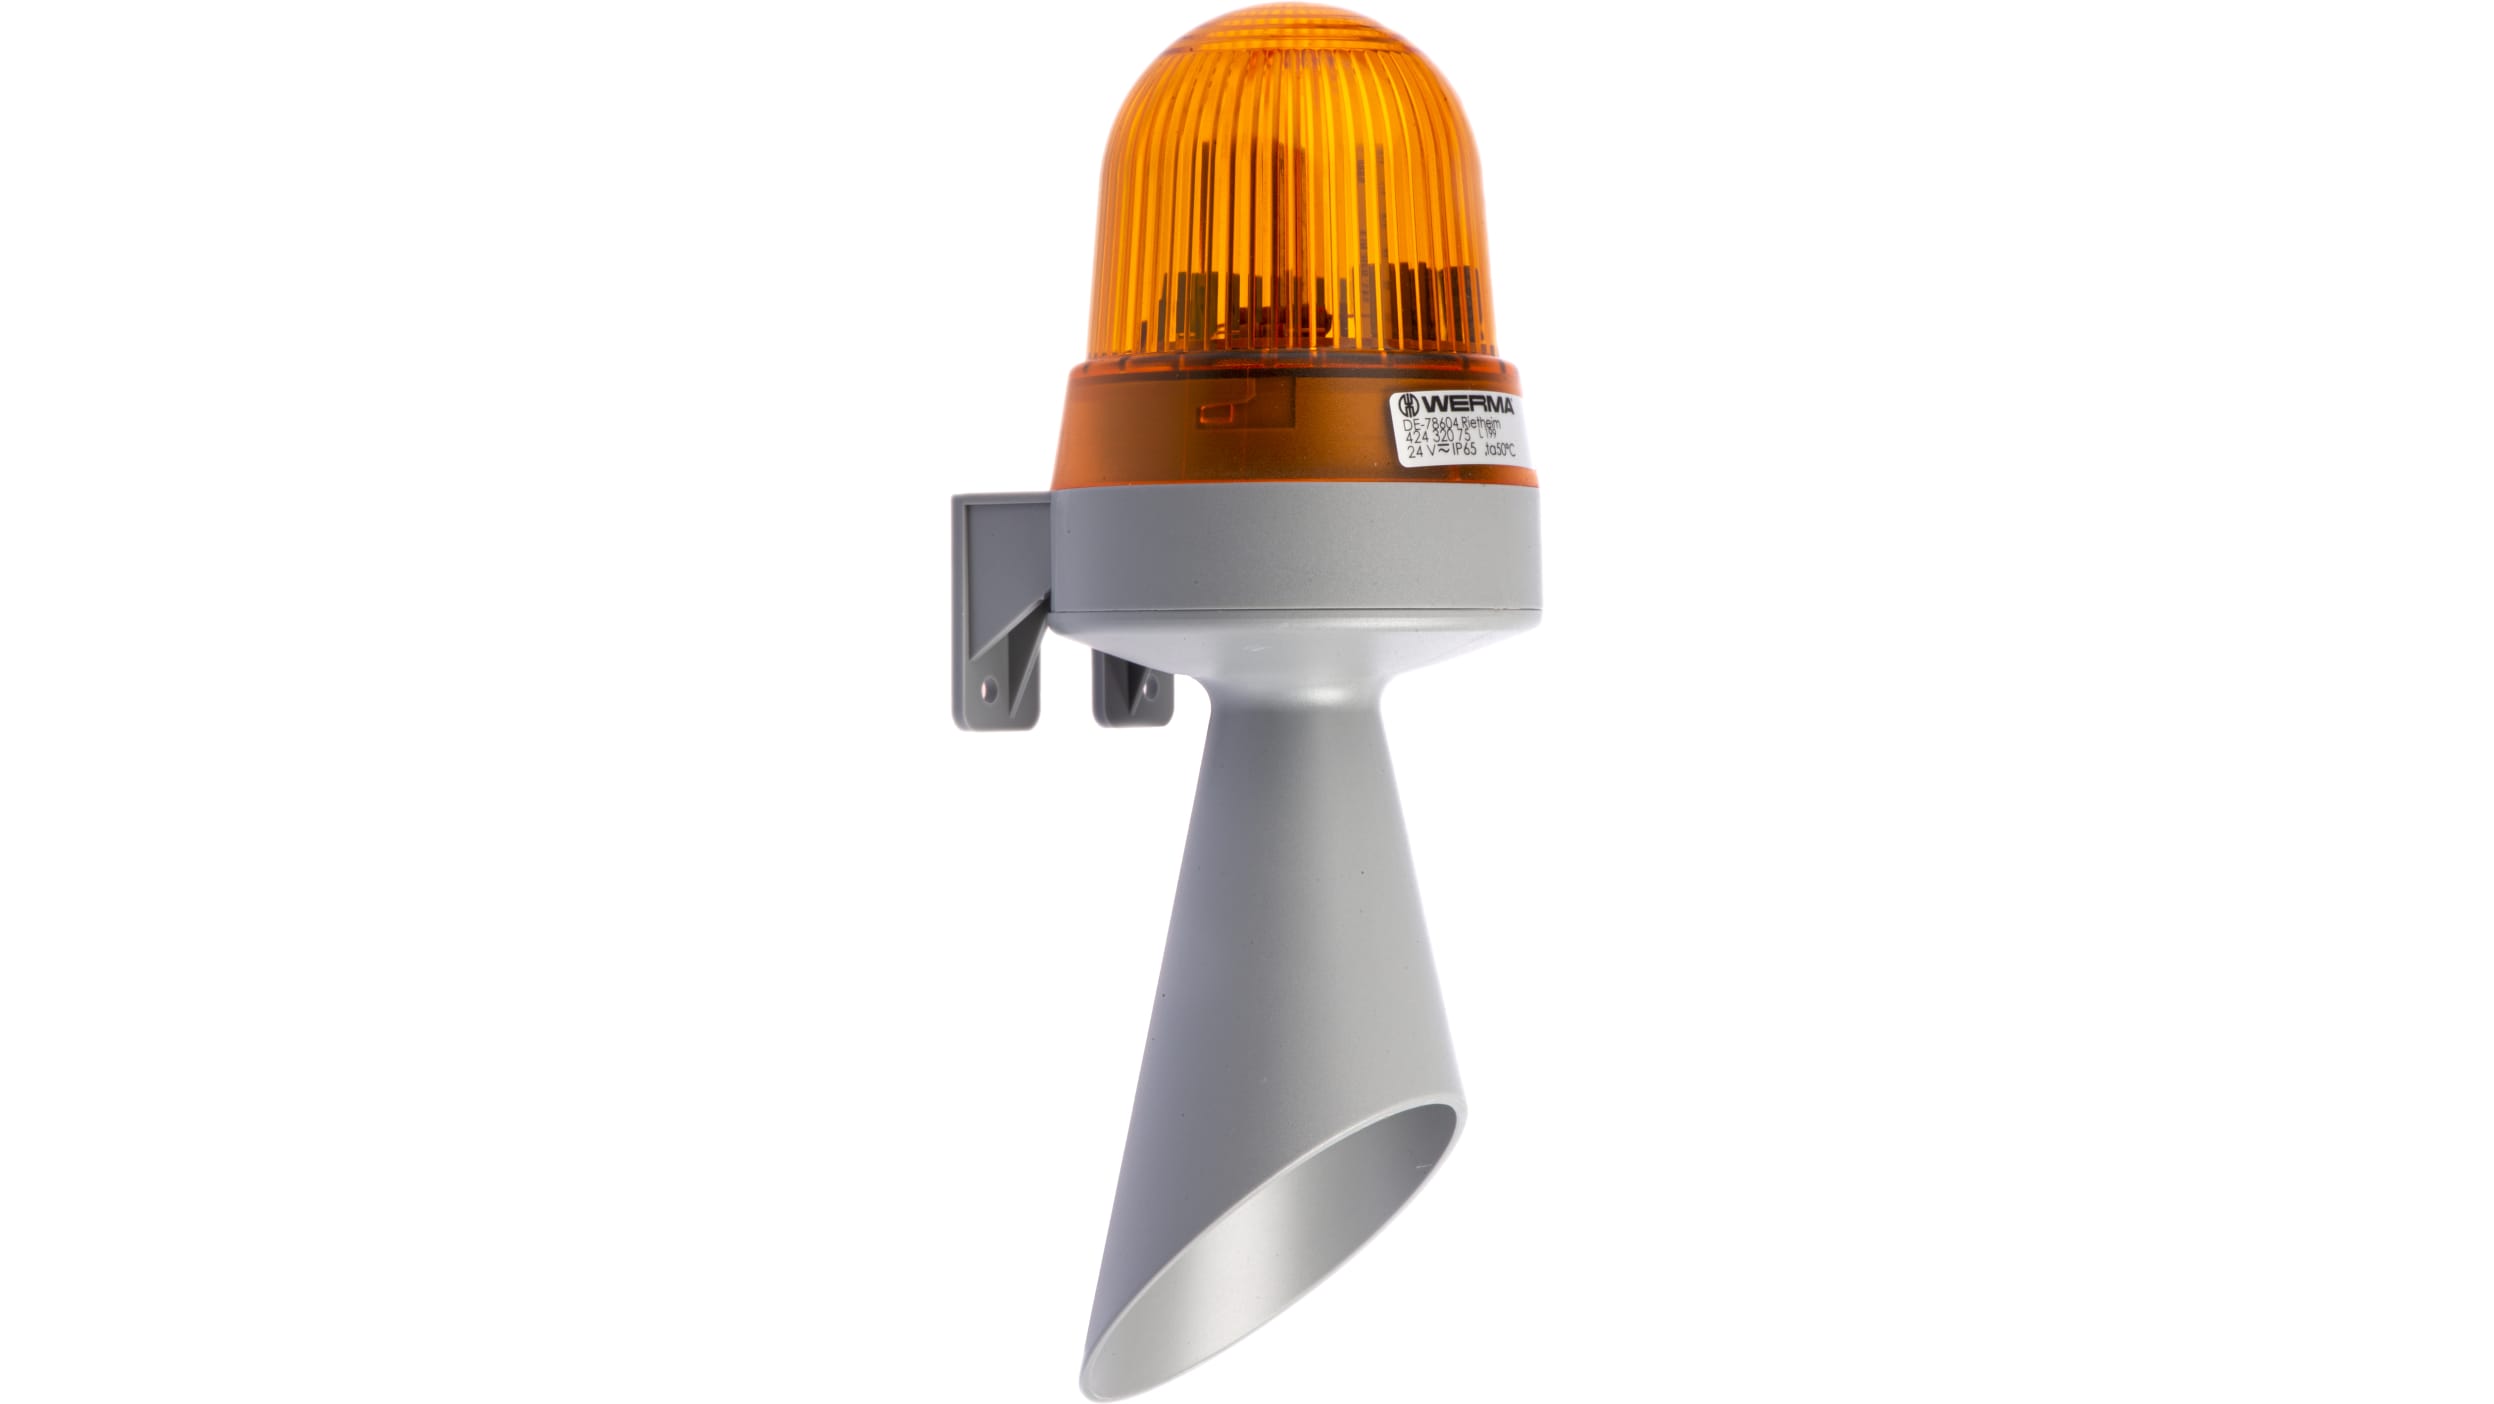 Werma 424 LED Dauer-Licht Alarm-Signalleuchte Gelb / 98dB, 24